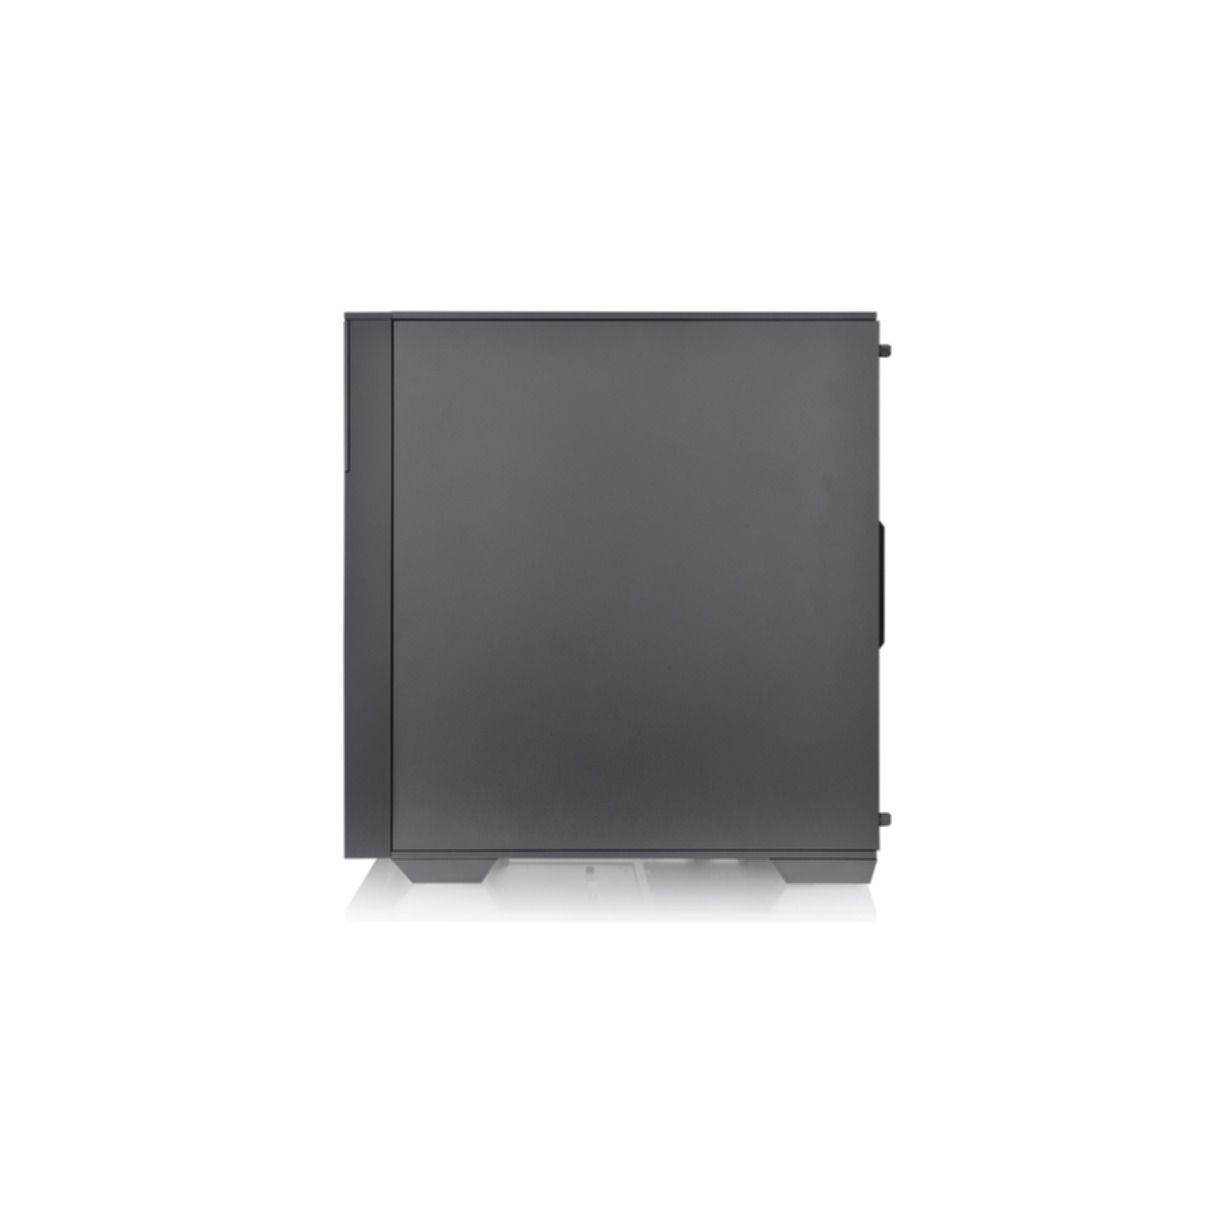 THERMALTAKE Divider Gehäuse, PC TG schwarz 170 ARGB